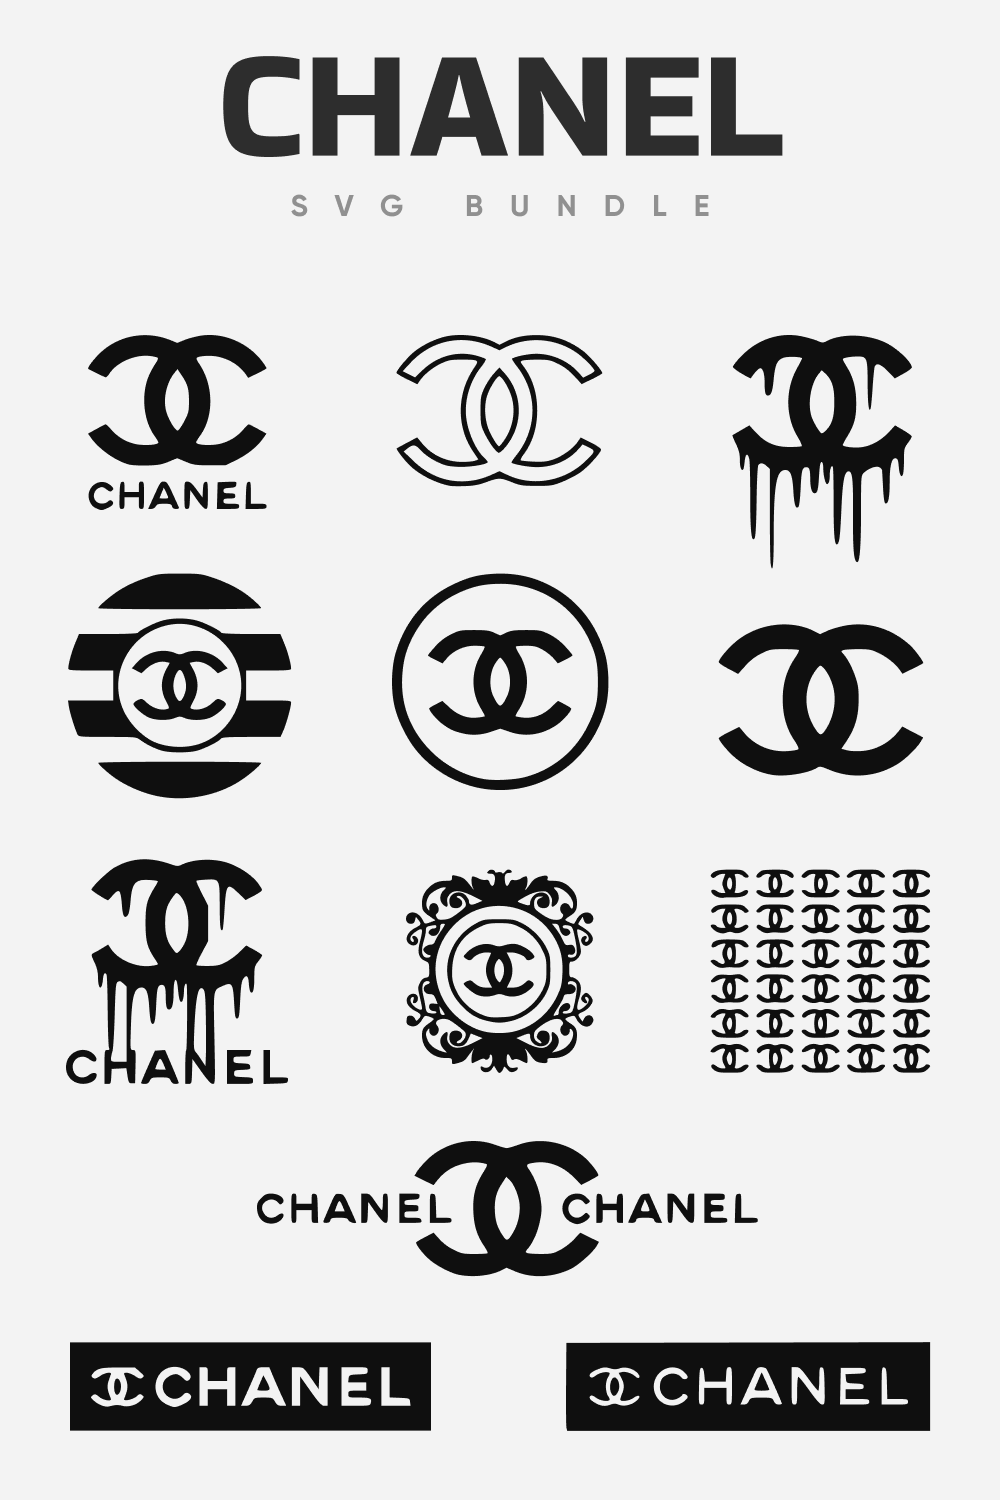 Thiết kế logo thương hiệu Chanel có ý nghĩa gì Tham khảo ngay